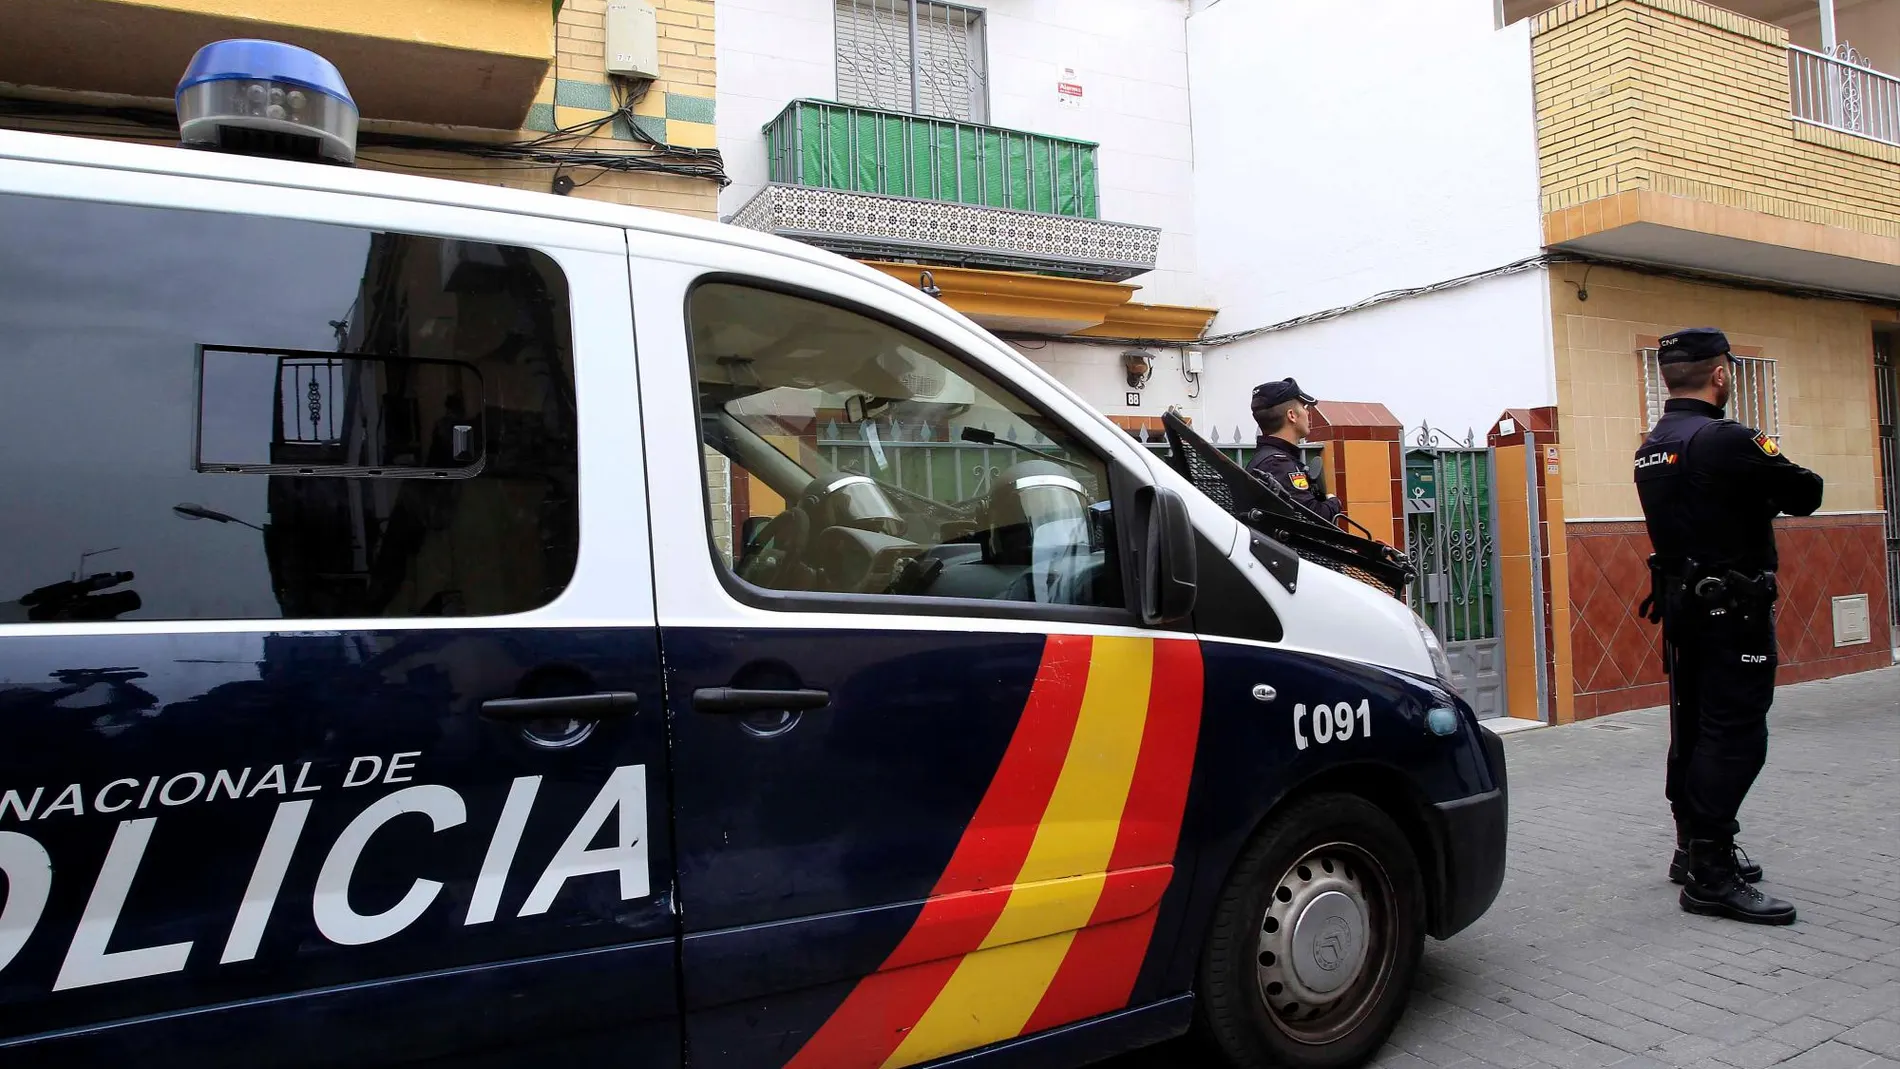 La acción policial de ha producido de forma simultánea en varias ciudades españolas